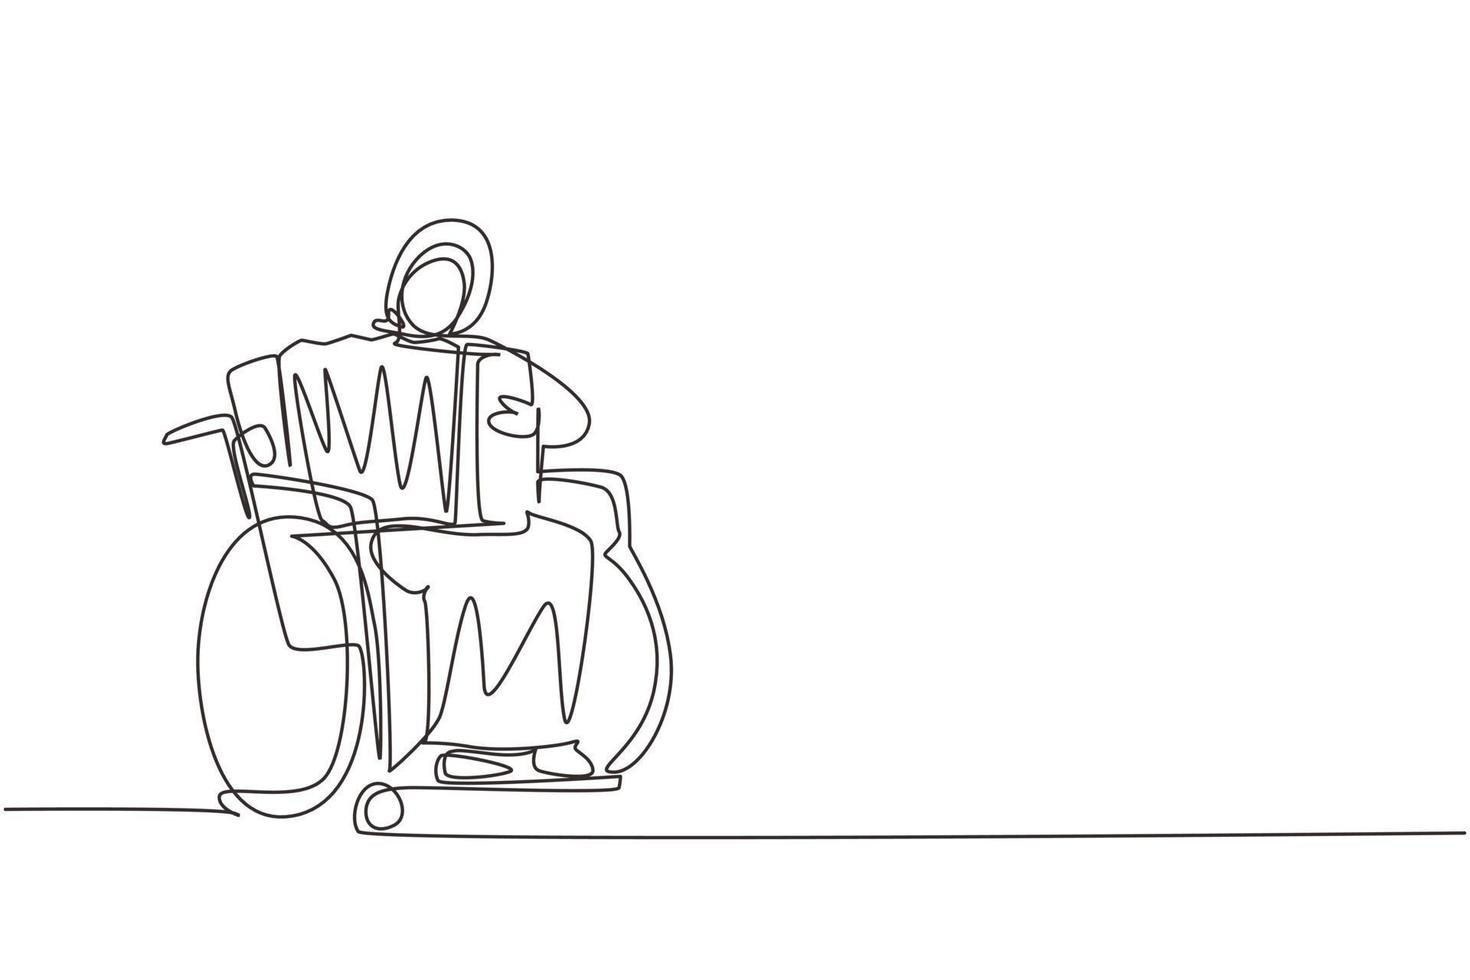 disegno a linea continua singola donna araba disabile in sedia a rotelle che suona musica per fisarmonica. disabile fisico. persona in ospedale. paziente del centro di riabilitazione. vettore di disegno grafico a una linea